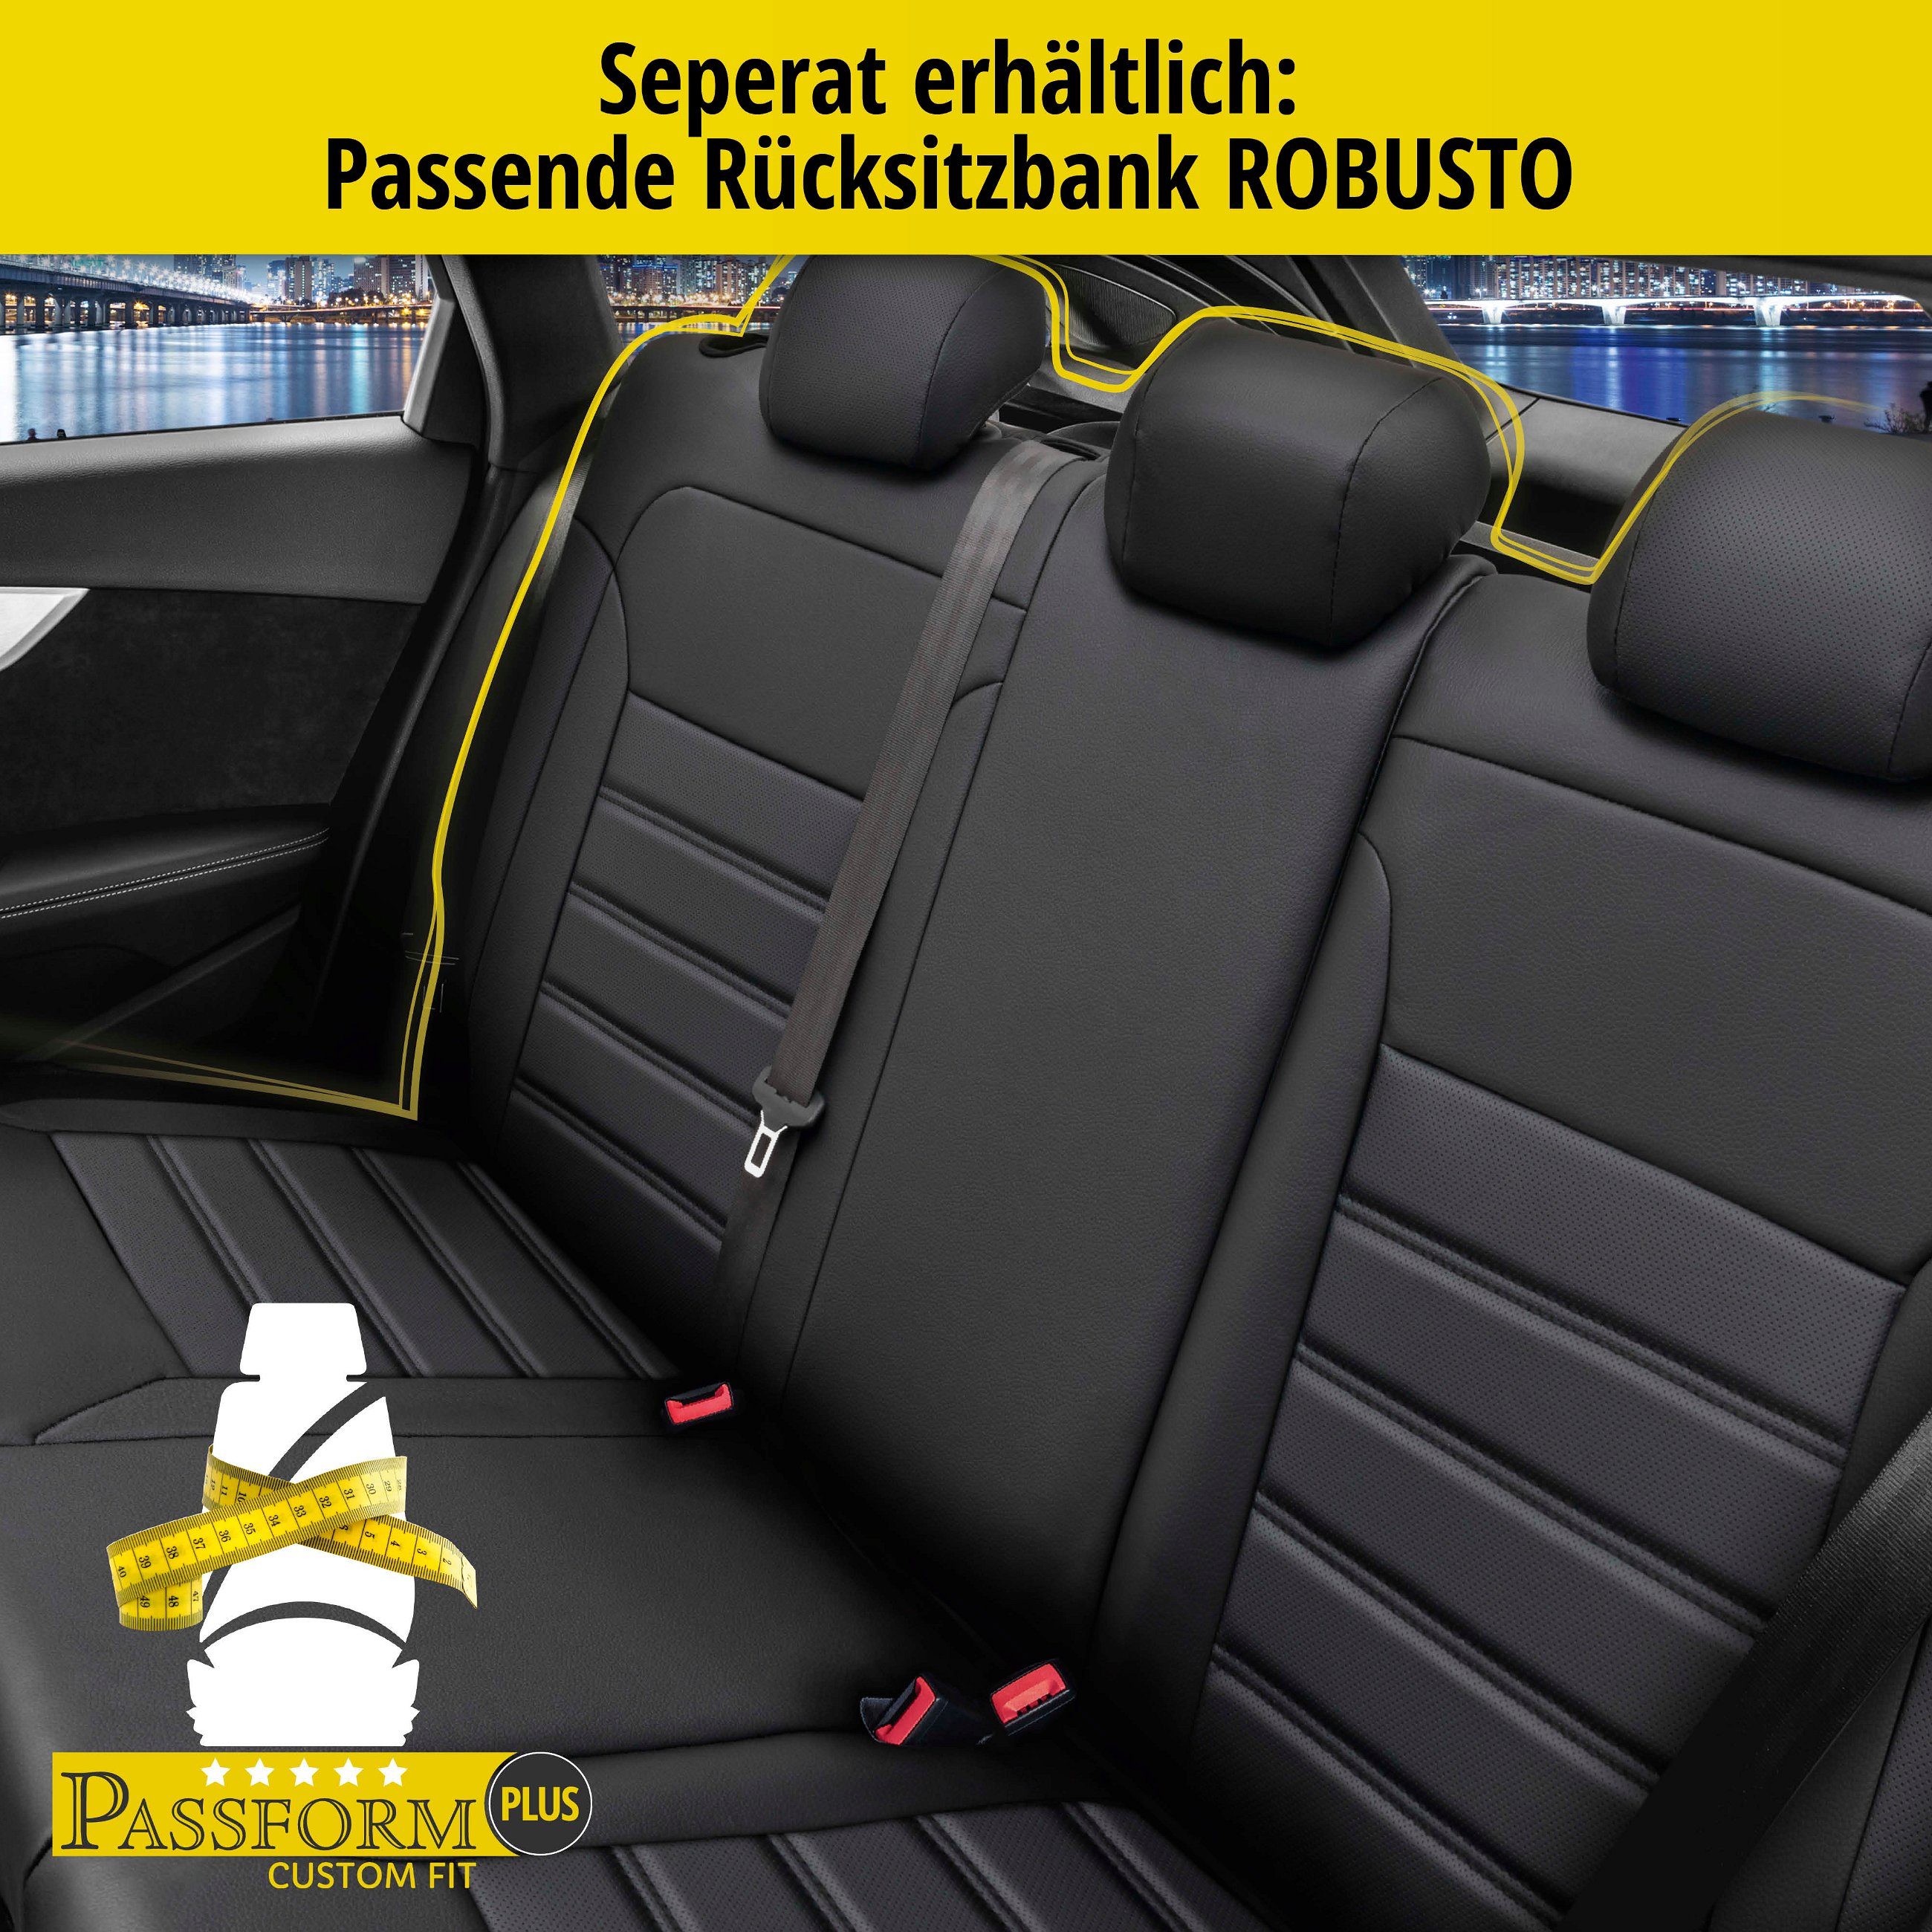 Passform Sitzbezug Robusto für BMW X3 (F25) 09/2010-08/2017, 2 Einzelsitzbezüge für Normalsitze